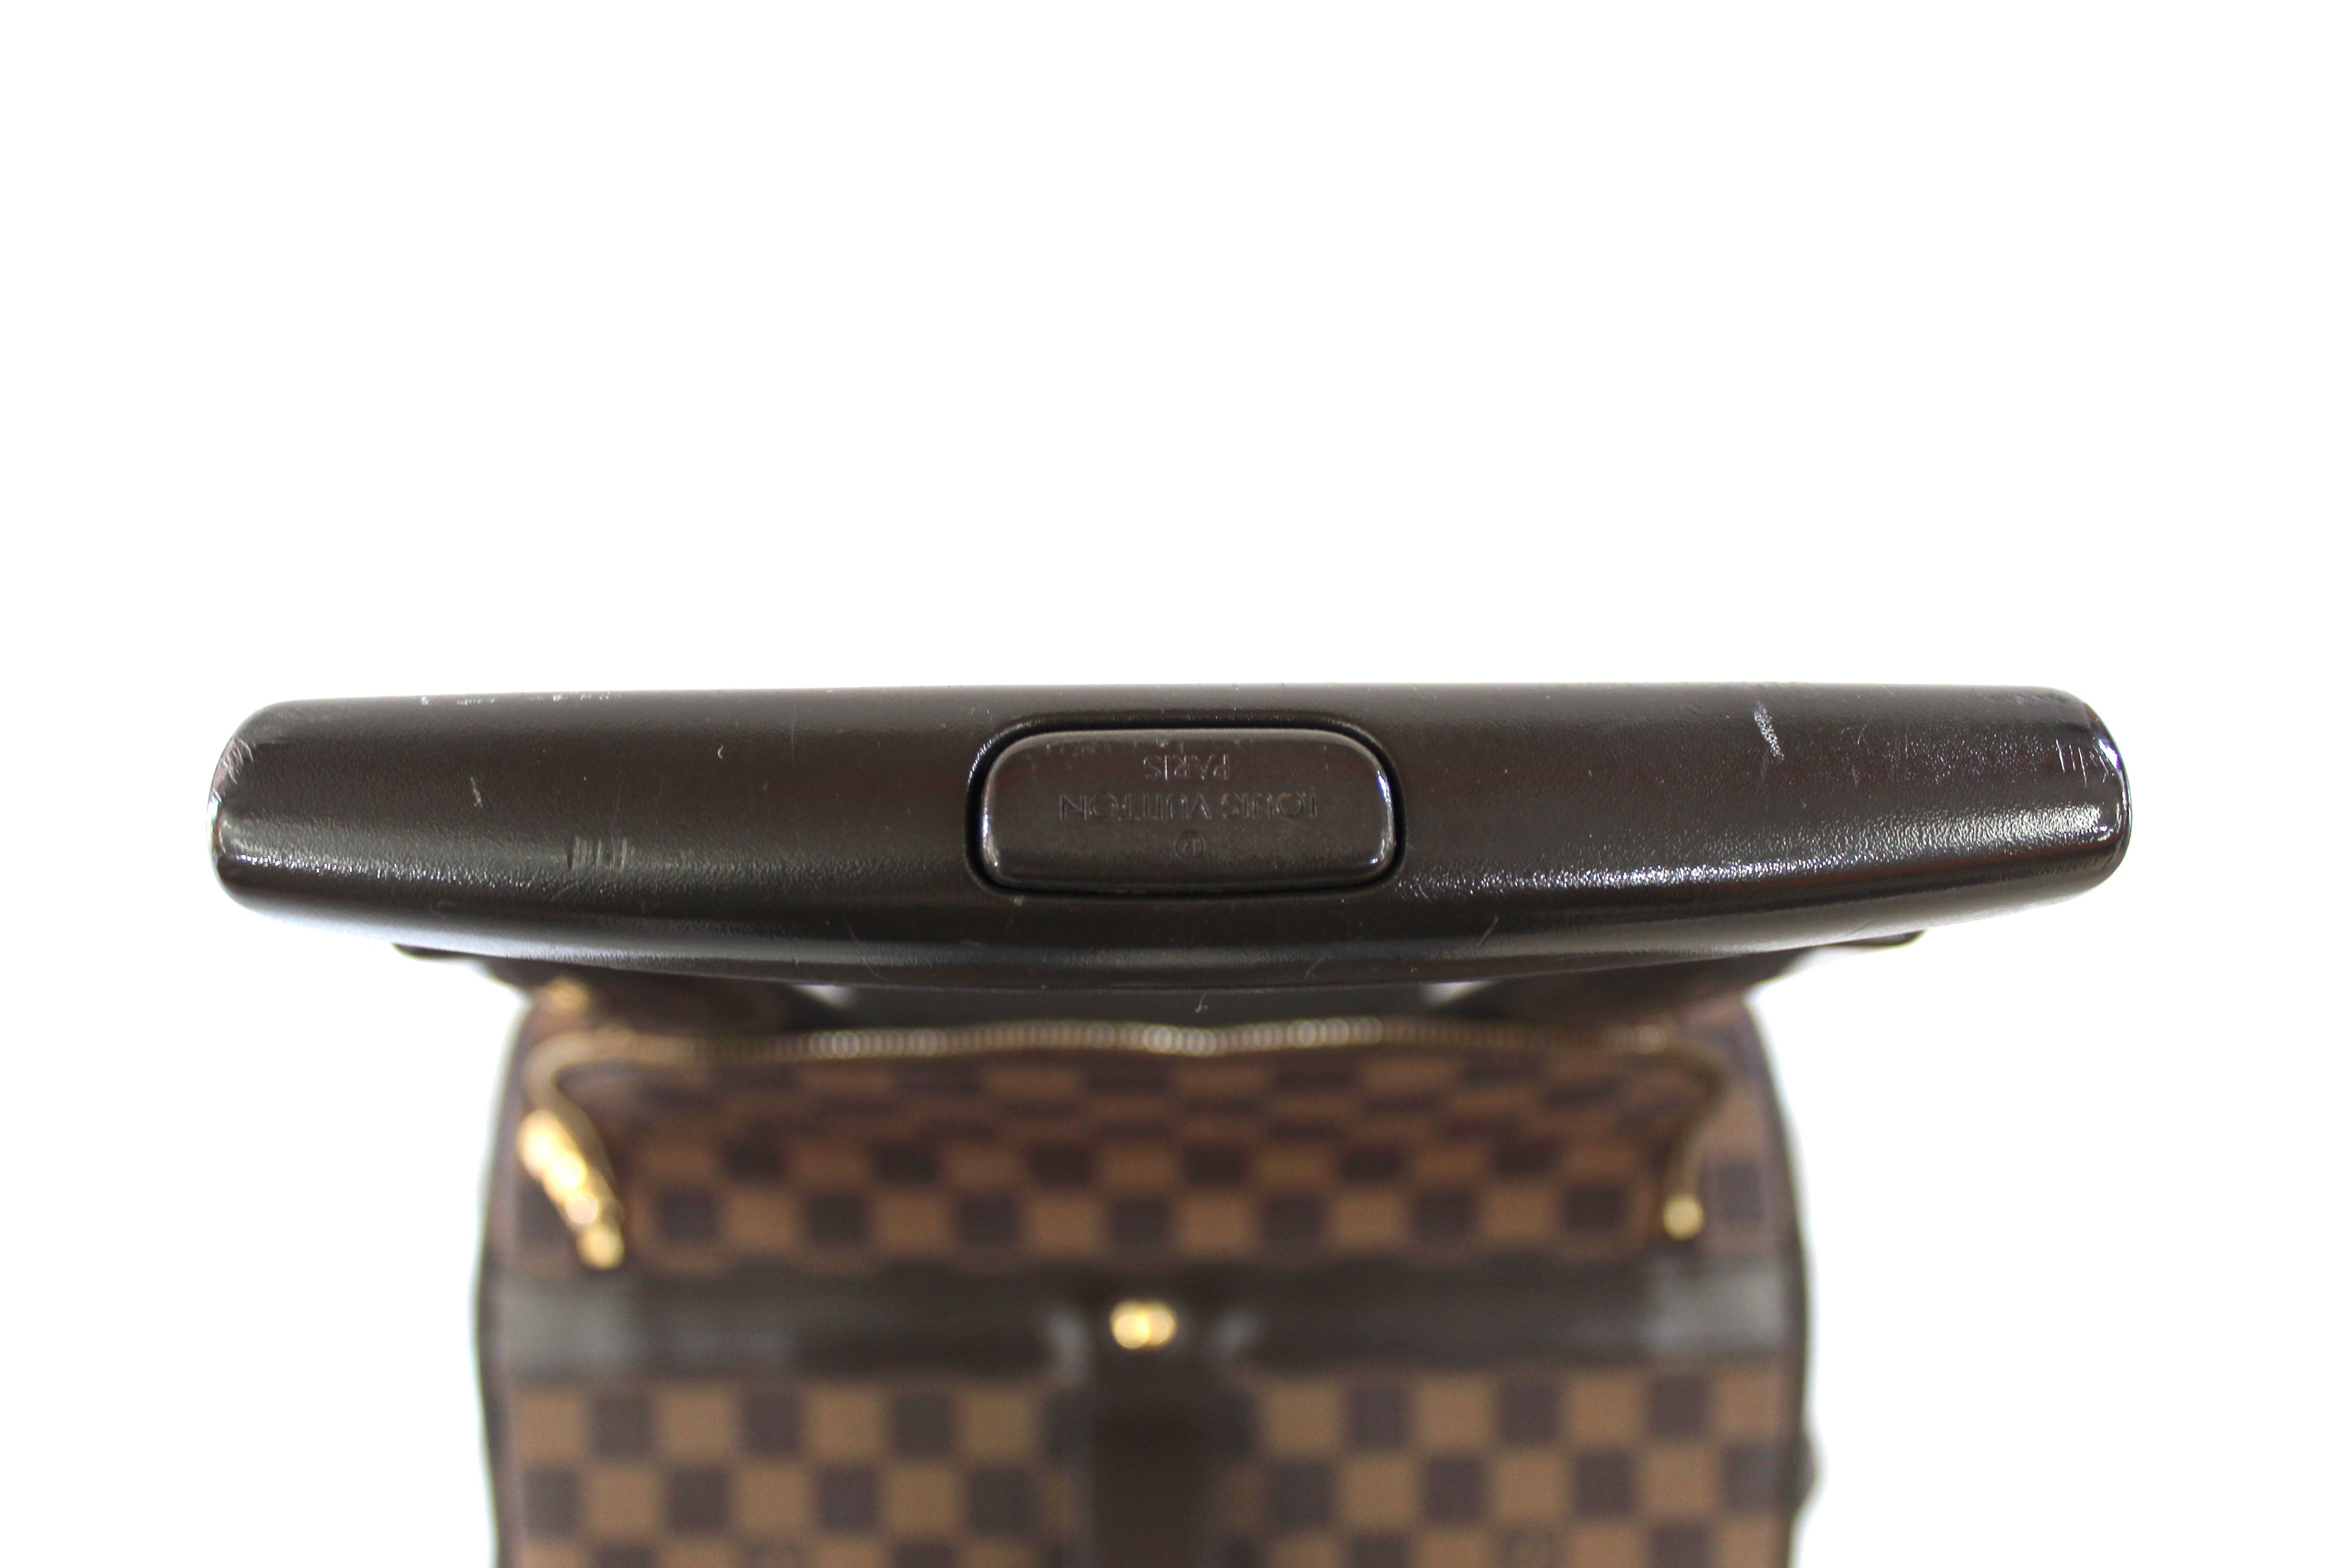 Authentic Louis Vuitton Damier Ebene Neo Eole 50 Suitcase